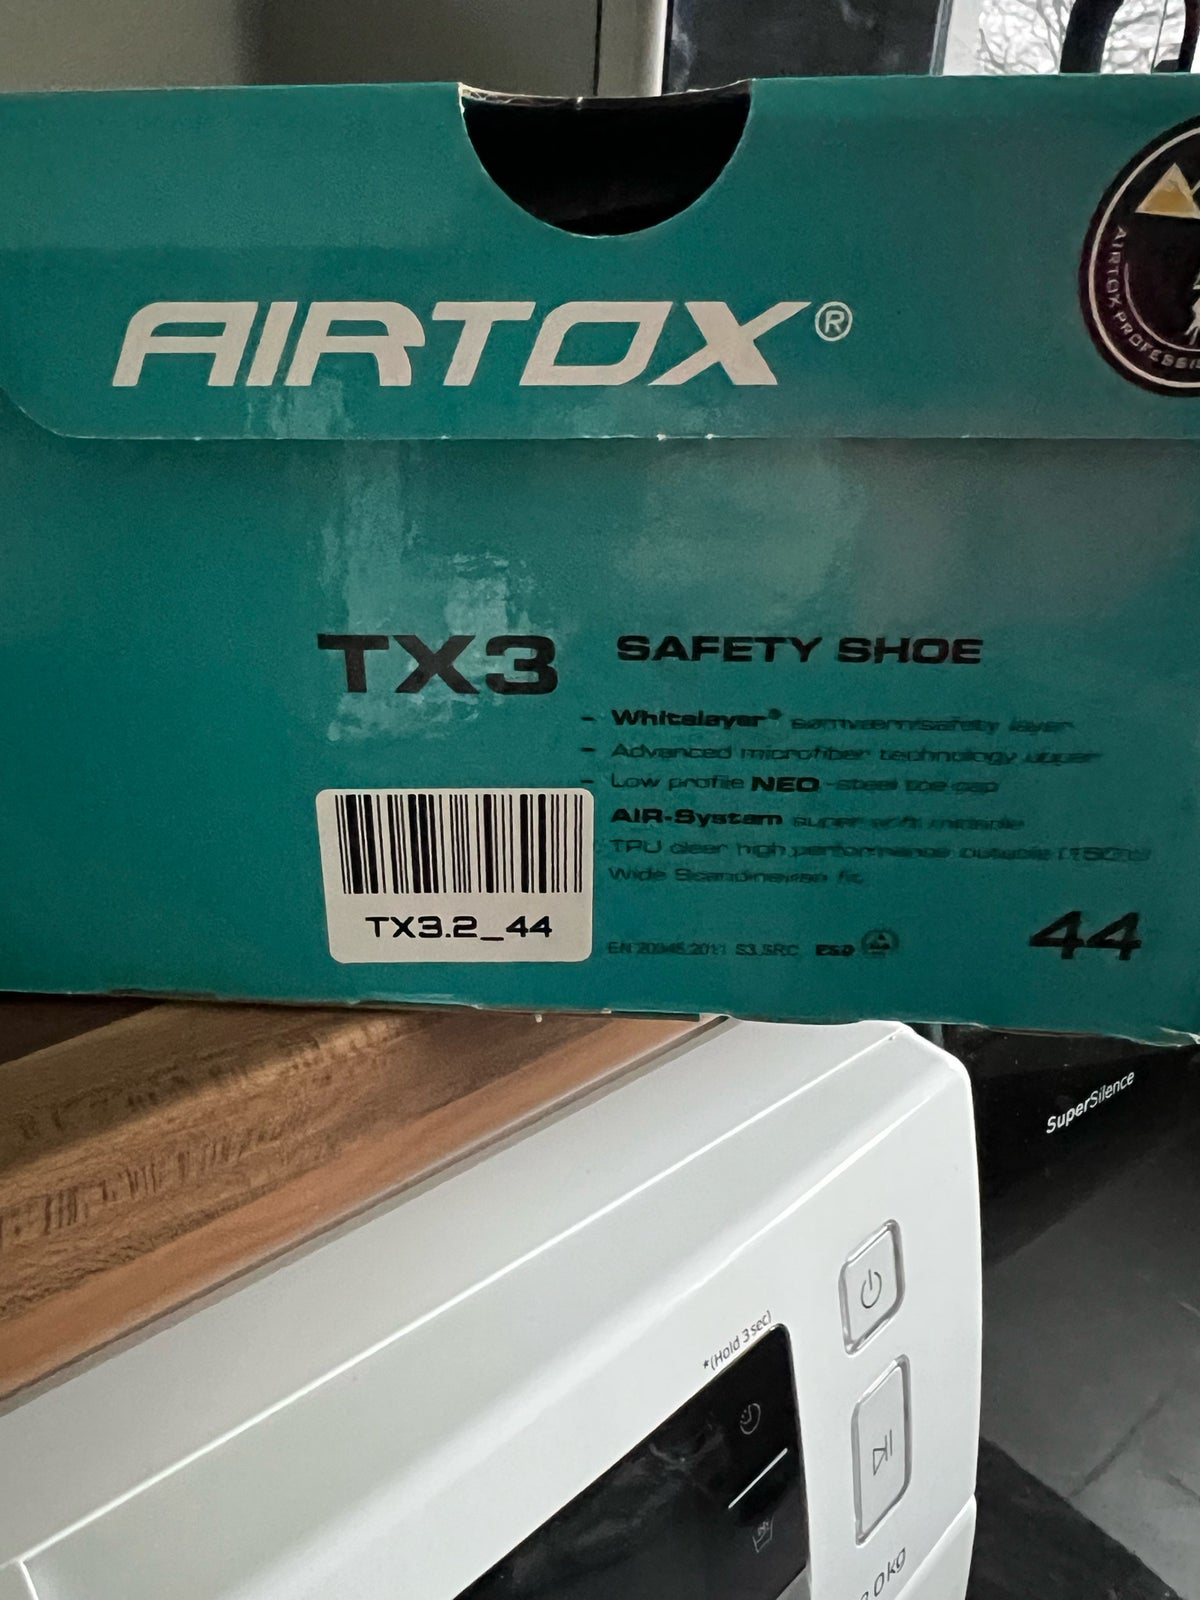 Airtox sikkerhedssko